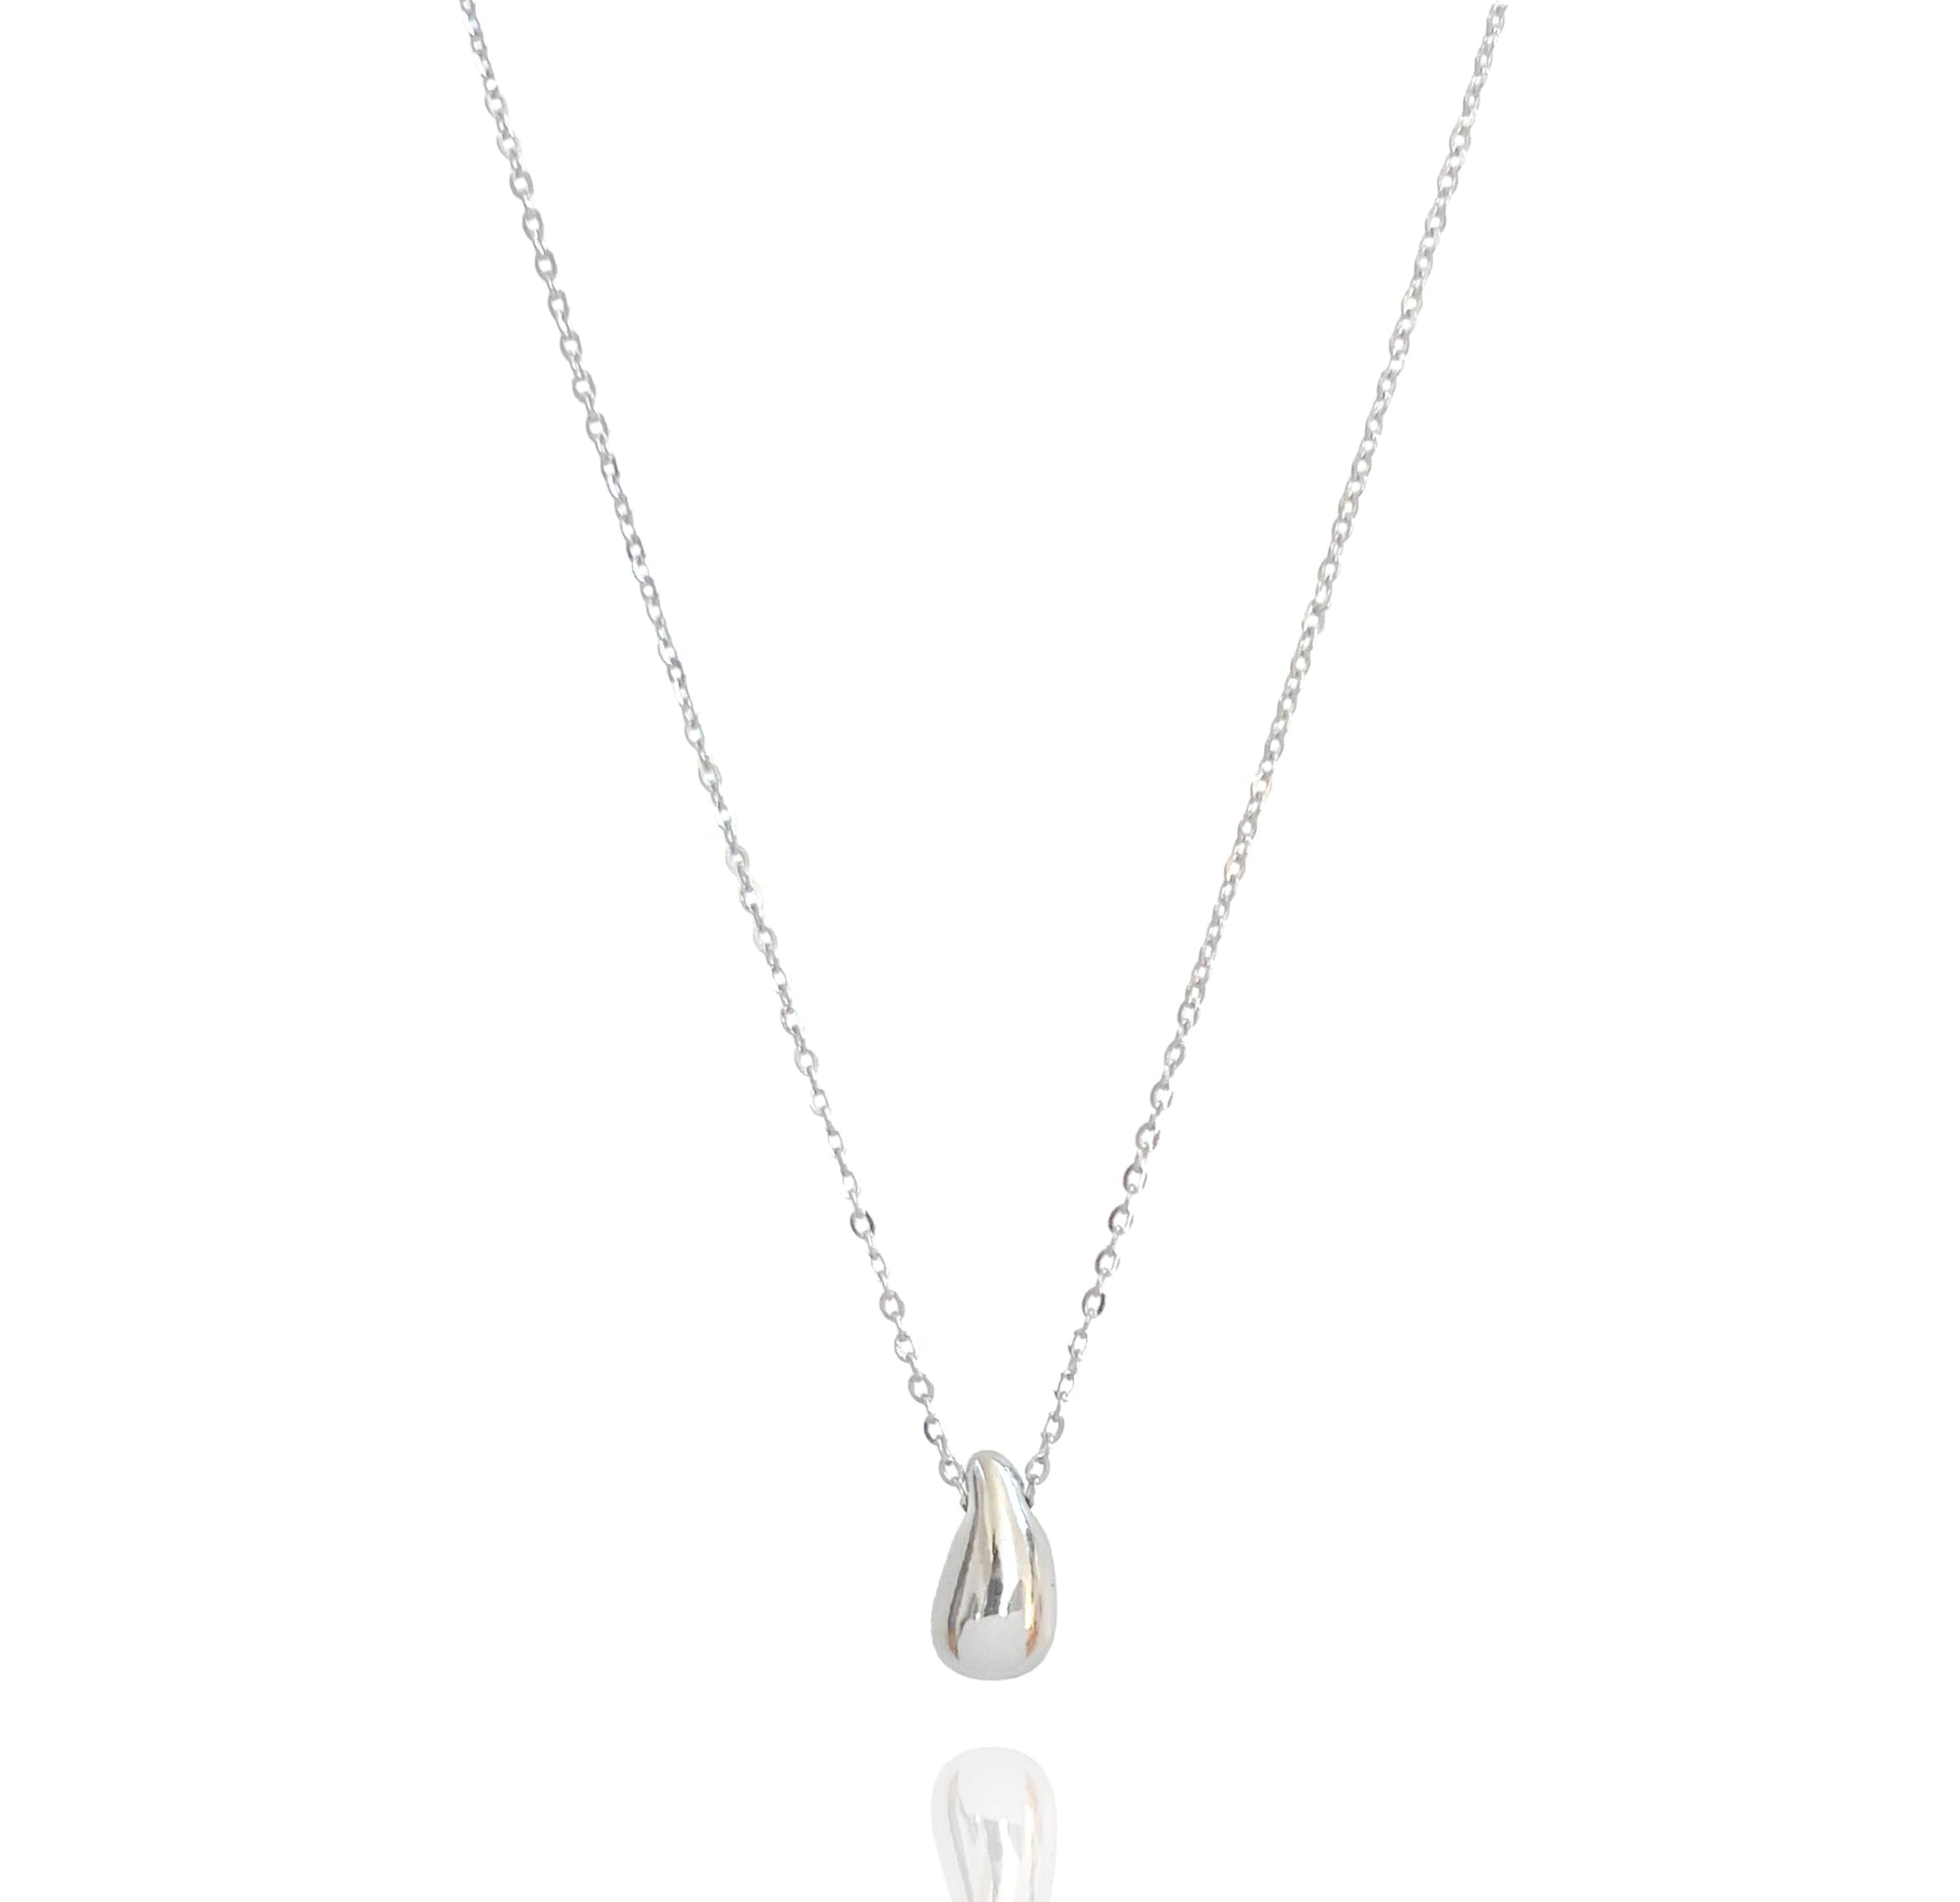 silver tear drop necklace waterproof jewelry